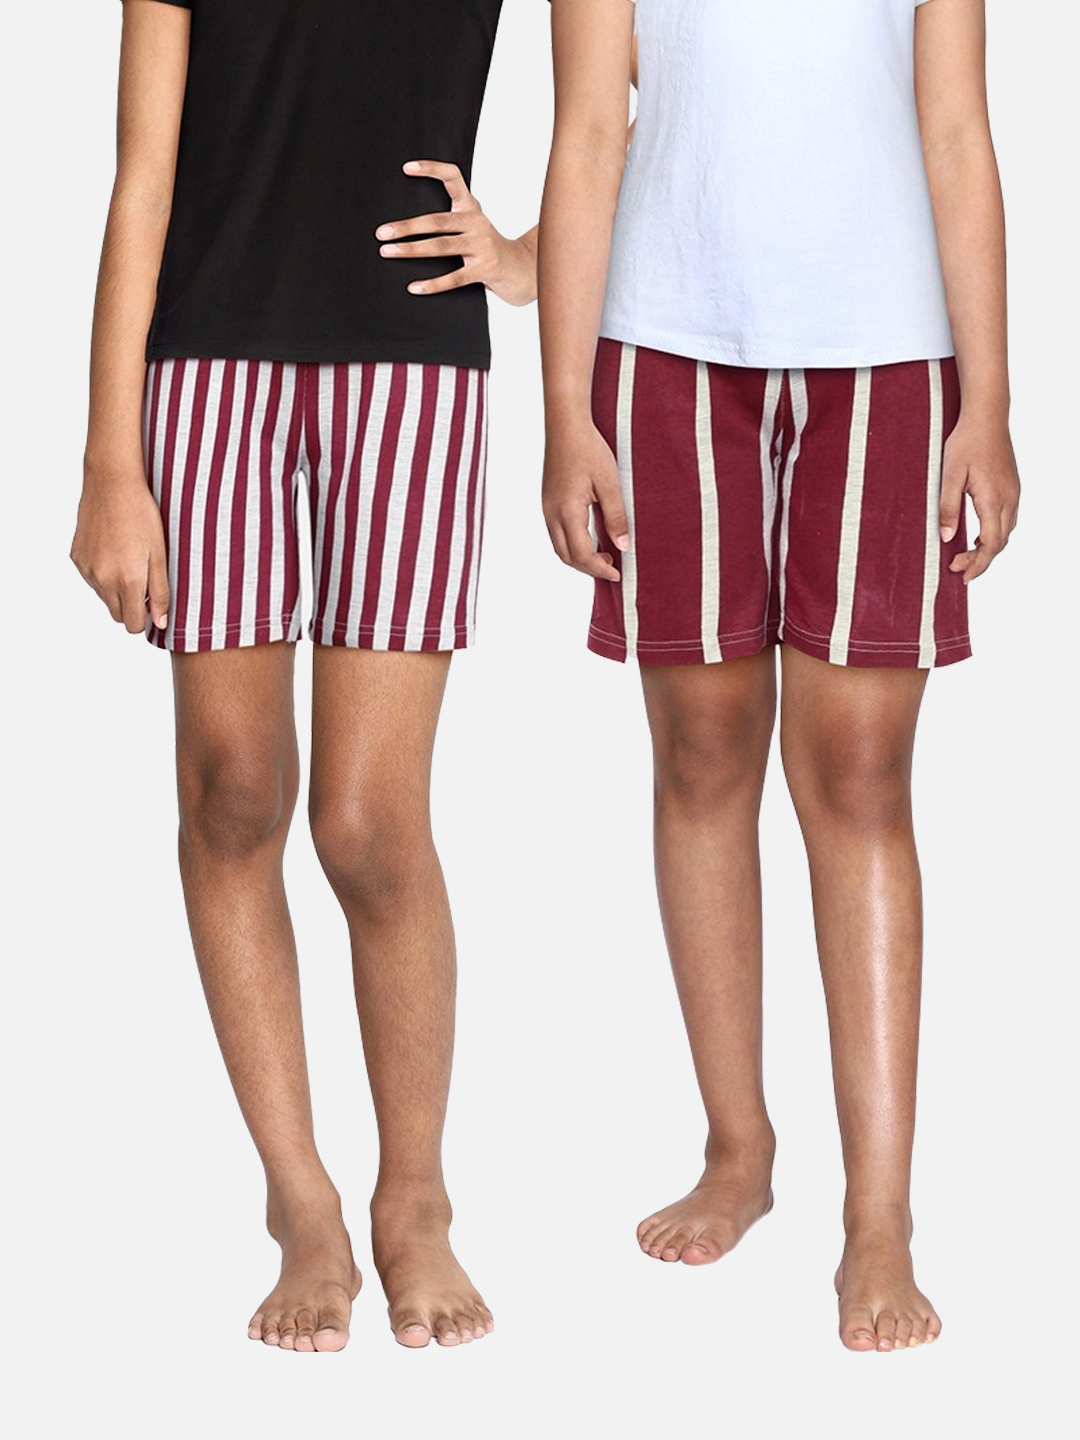 SEYBIL | Seybil teen girls cotton rich printed lounge shorts 0